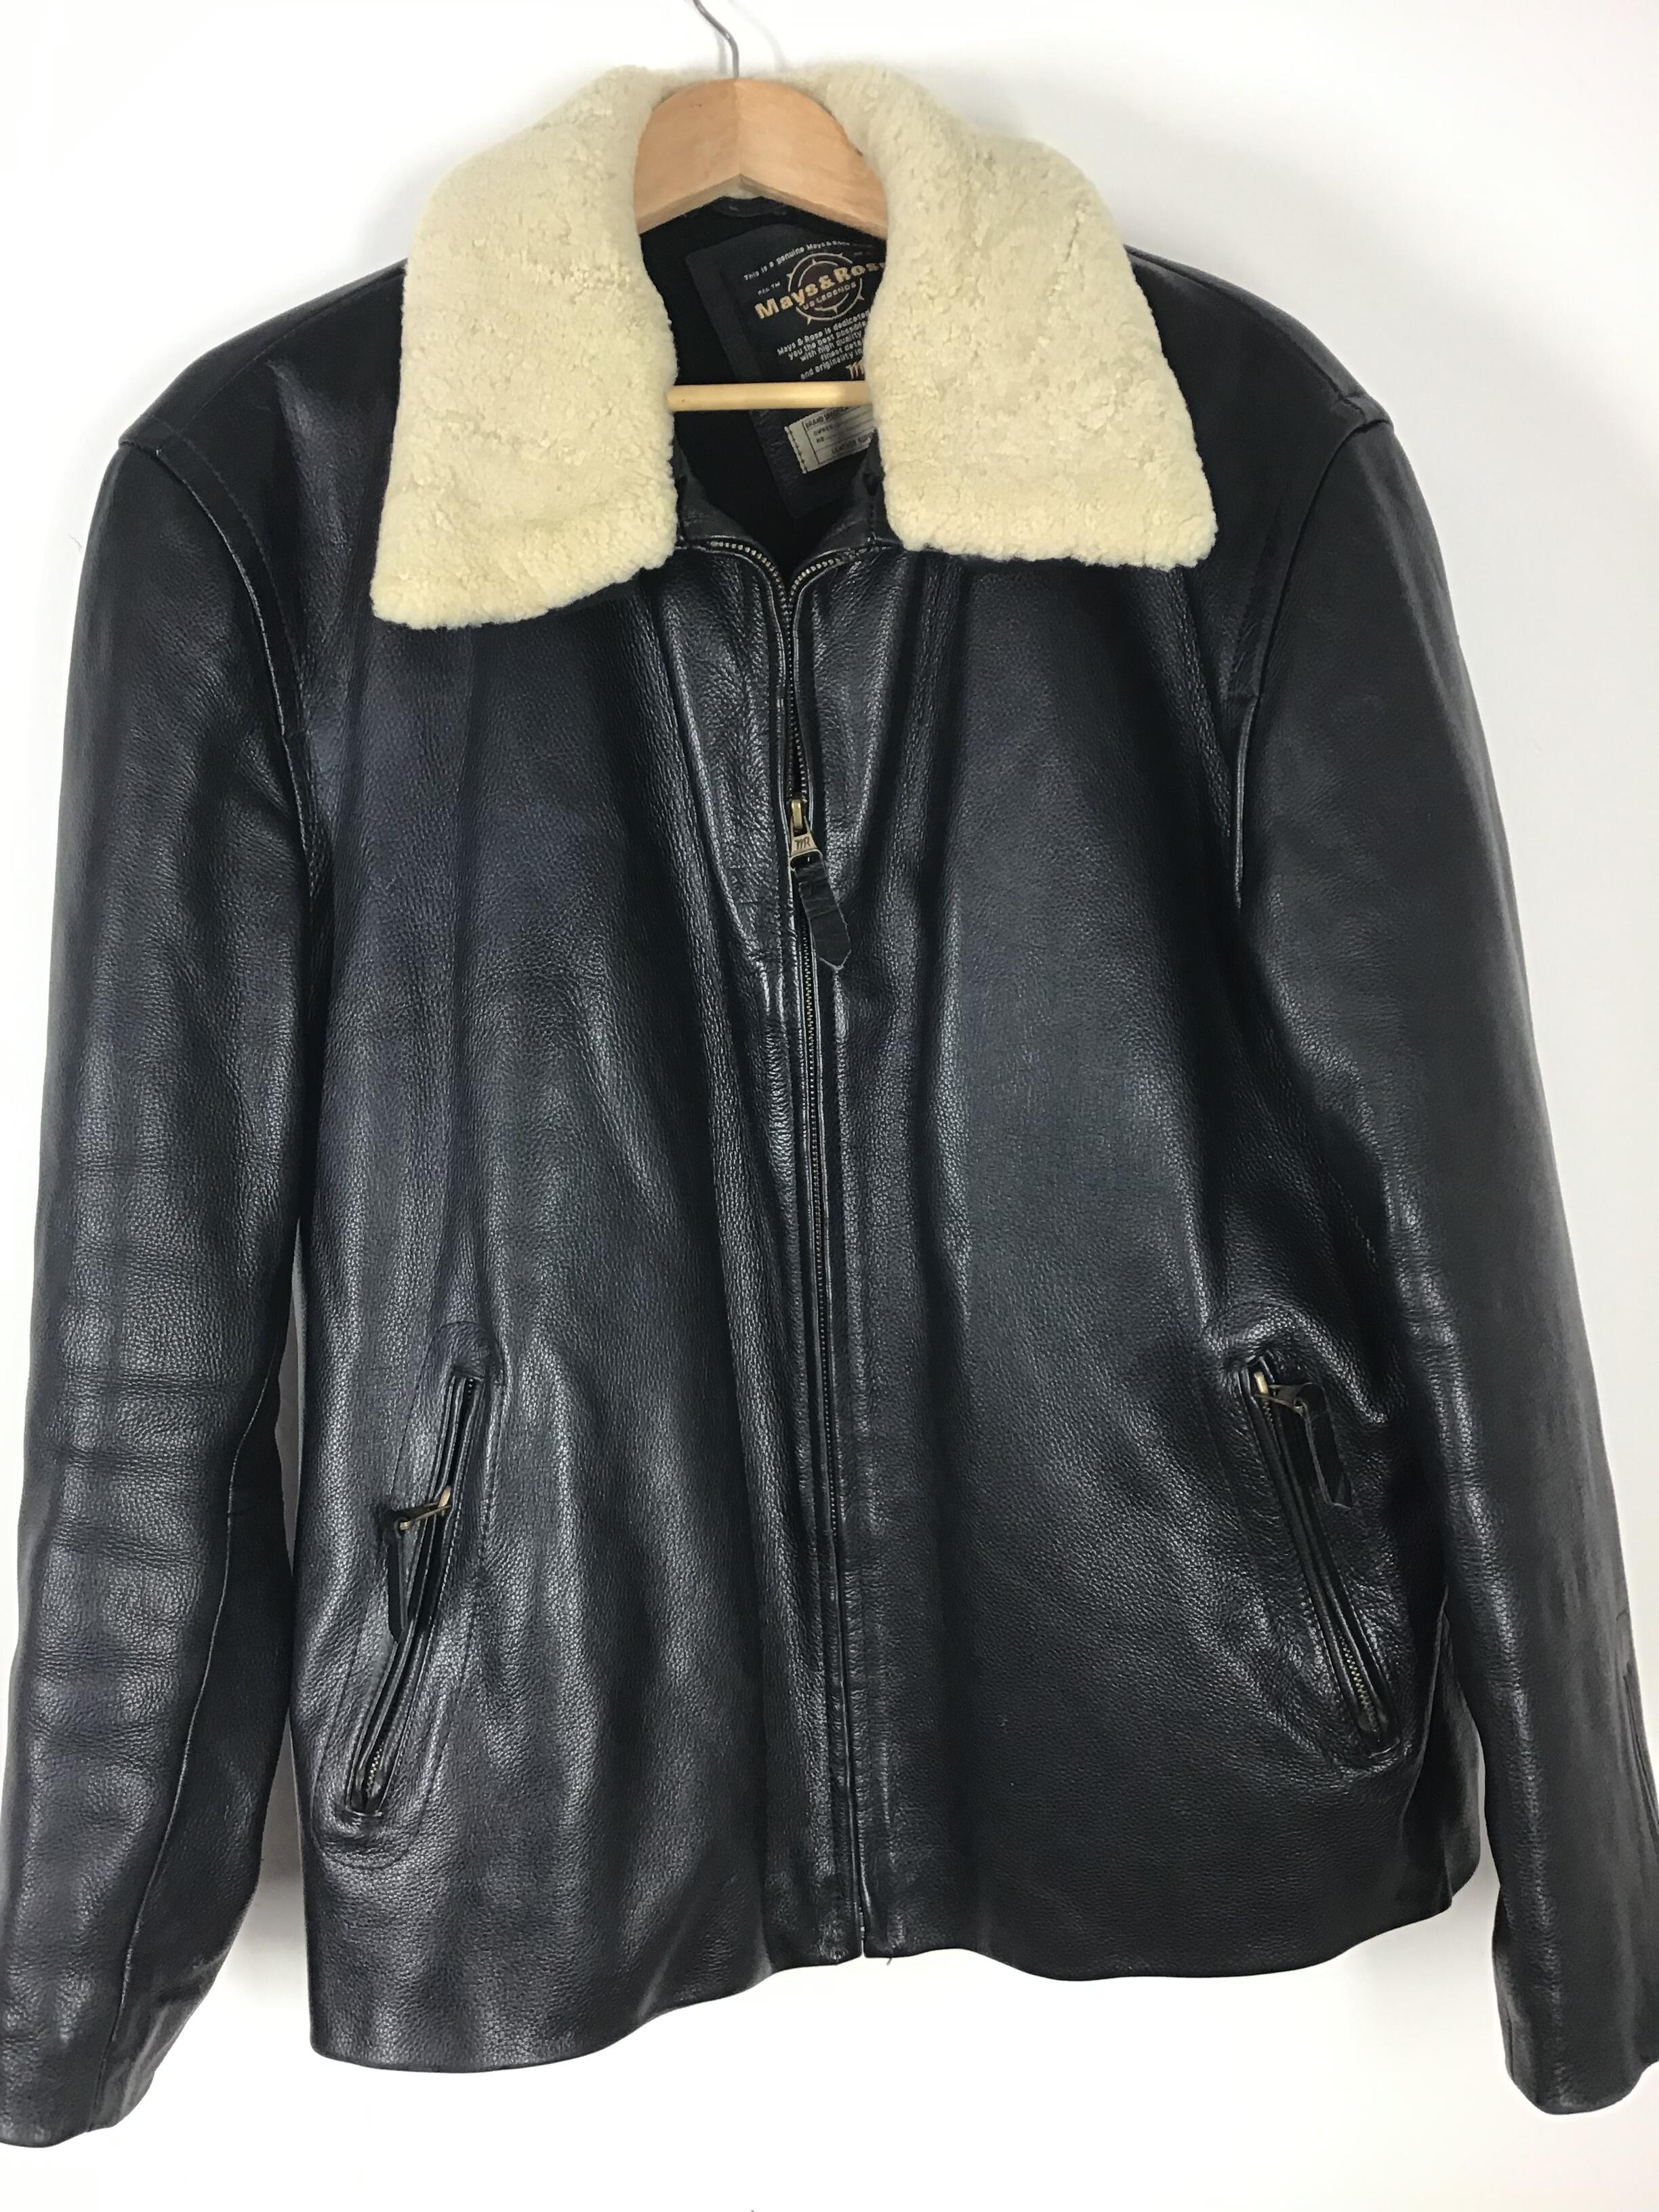 Mays & Rose Black Leather Jacket UK 50